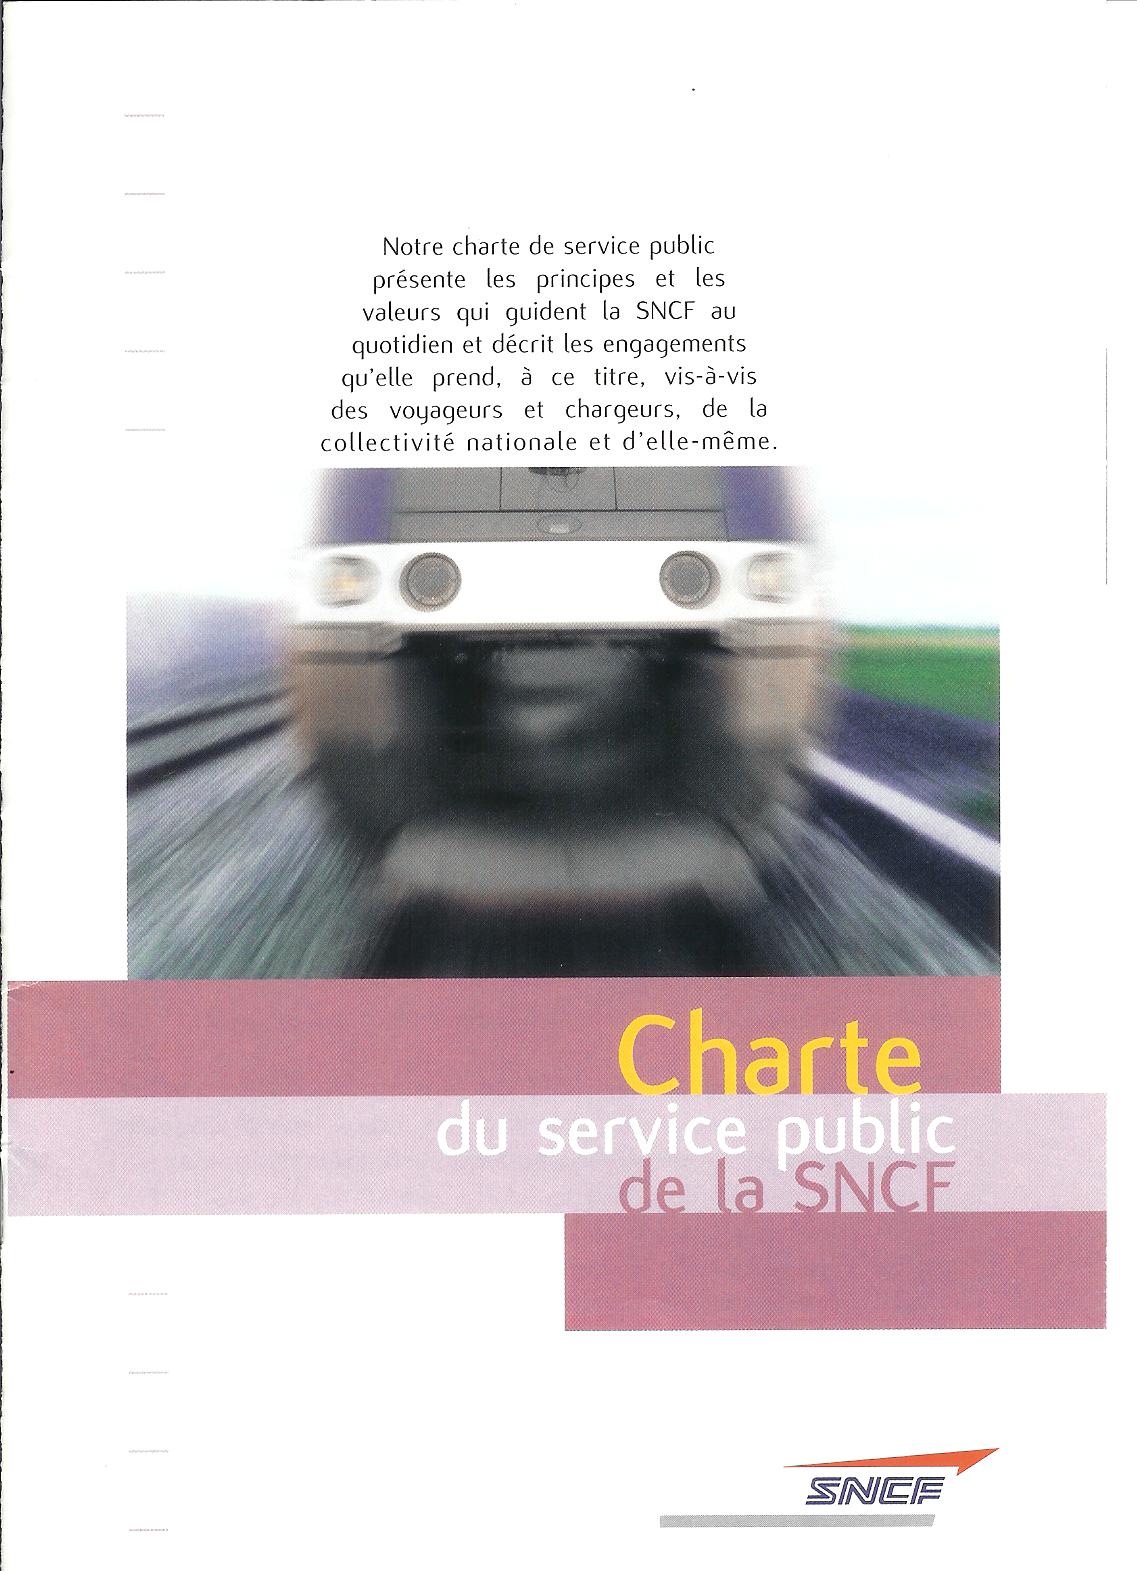 charte-du-service-public-sncf-1-2004-10